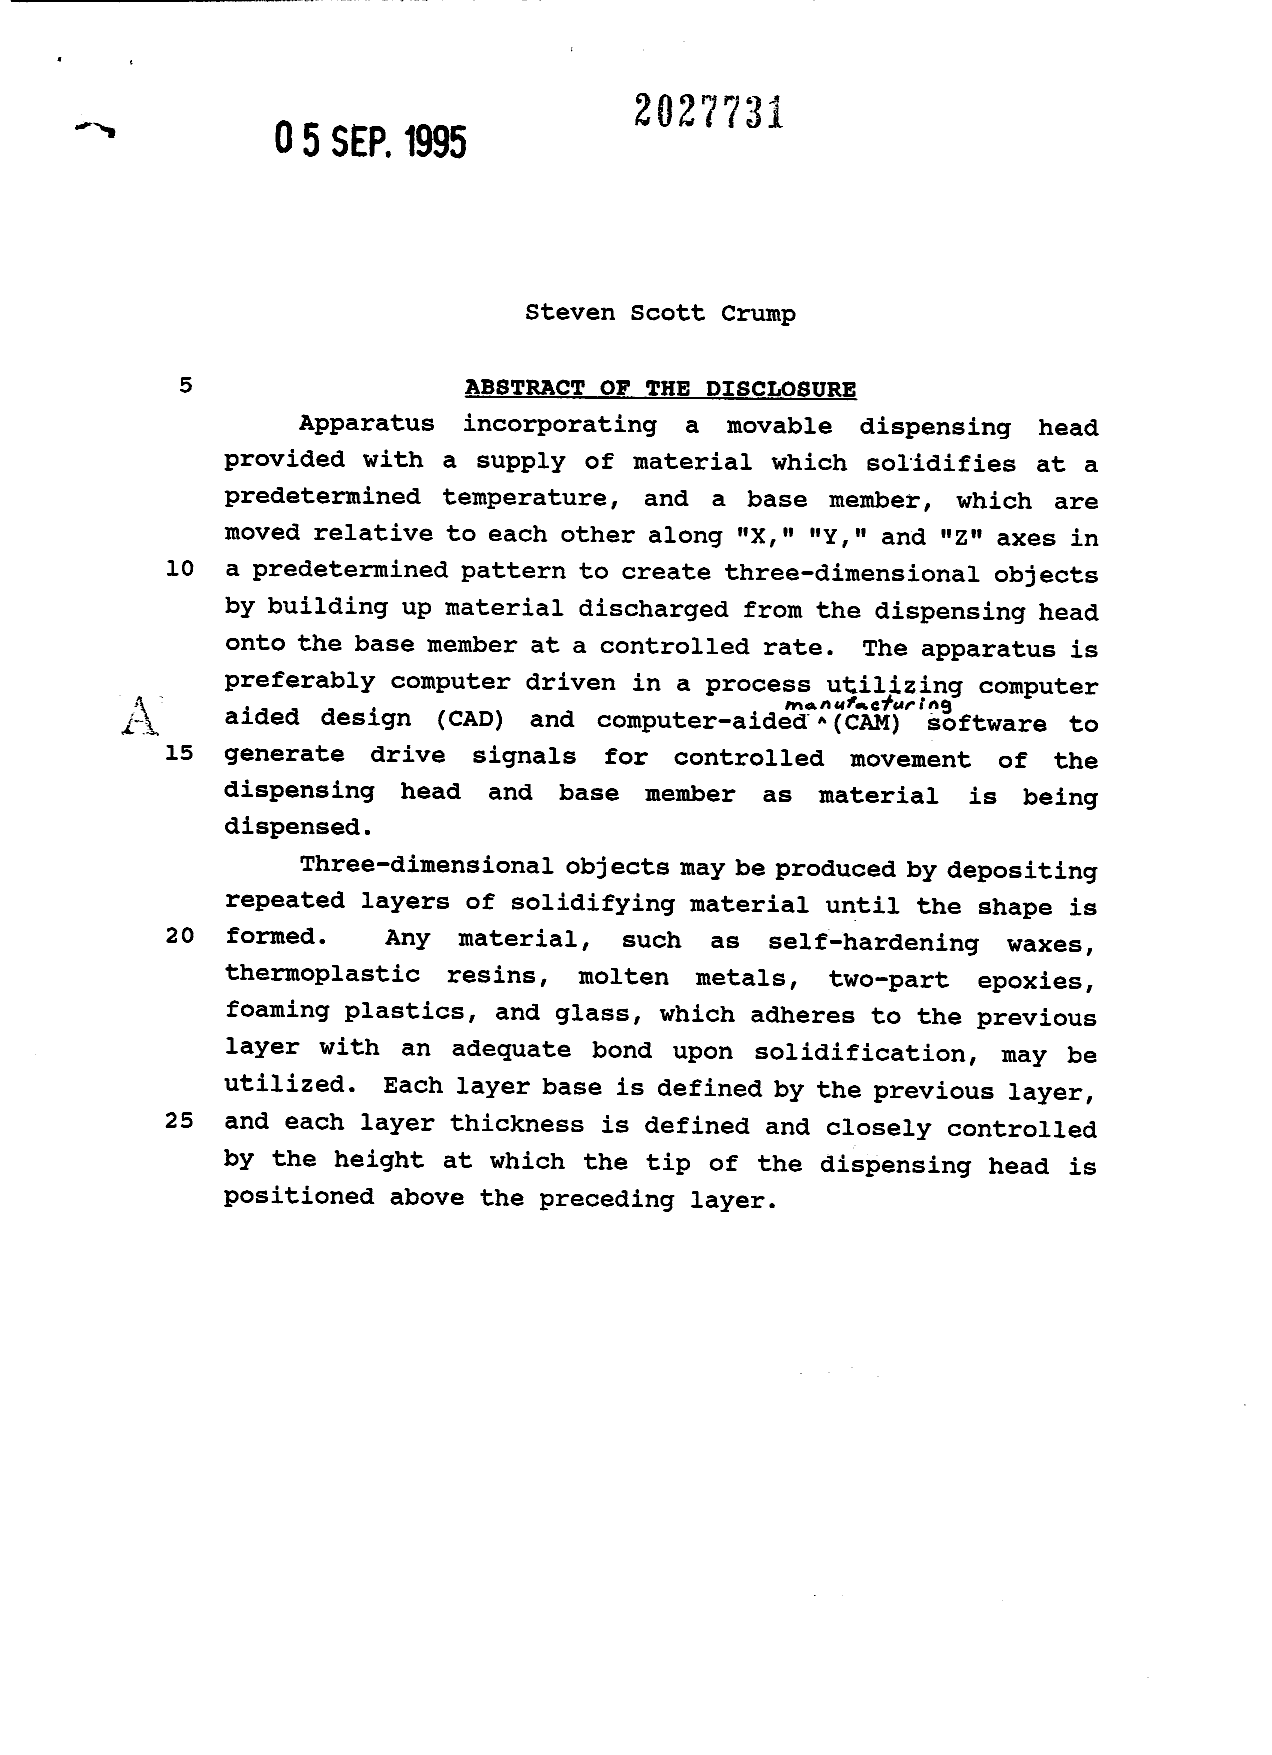 Document de brevet canadien 2027731. Abrégé 19950905. Image 1 de 1